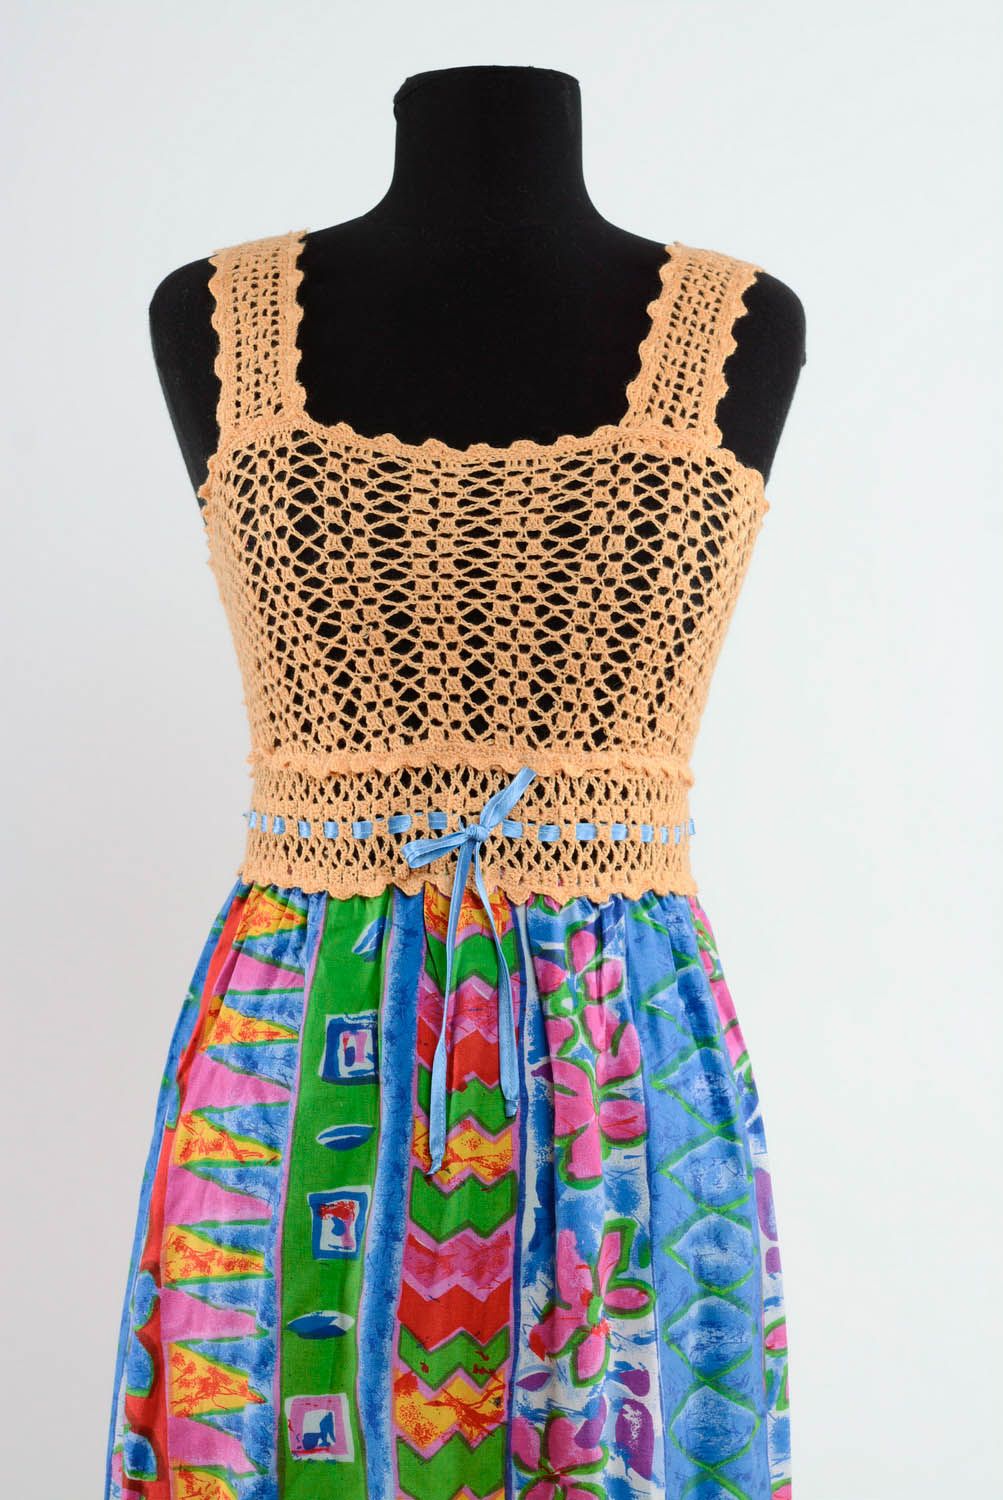 Robe multicolore en acrylique tricotée à main photo 2